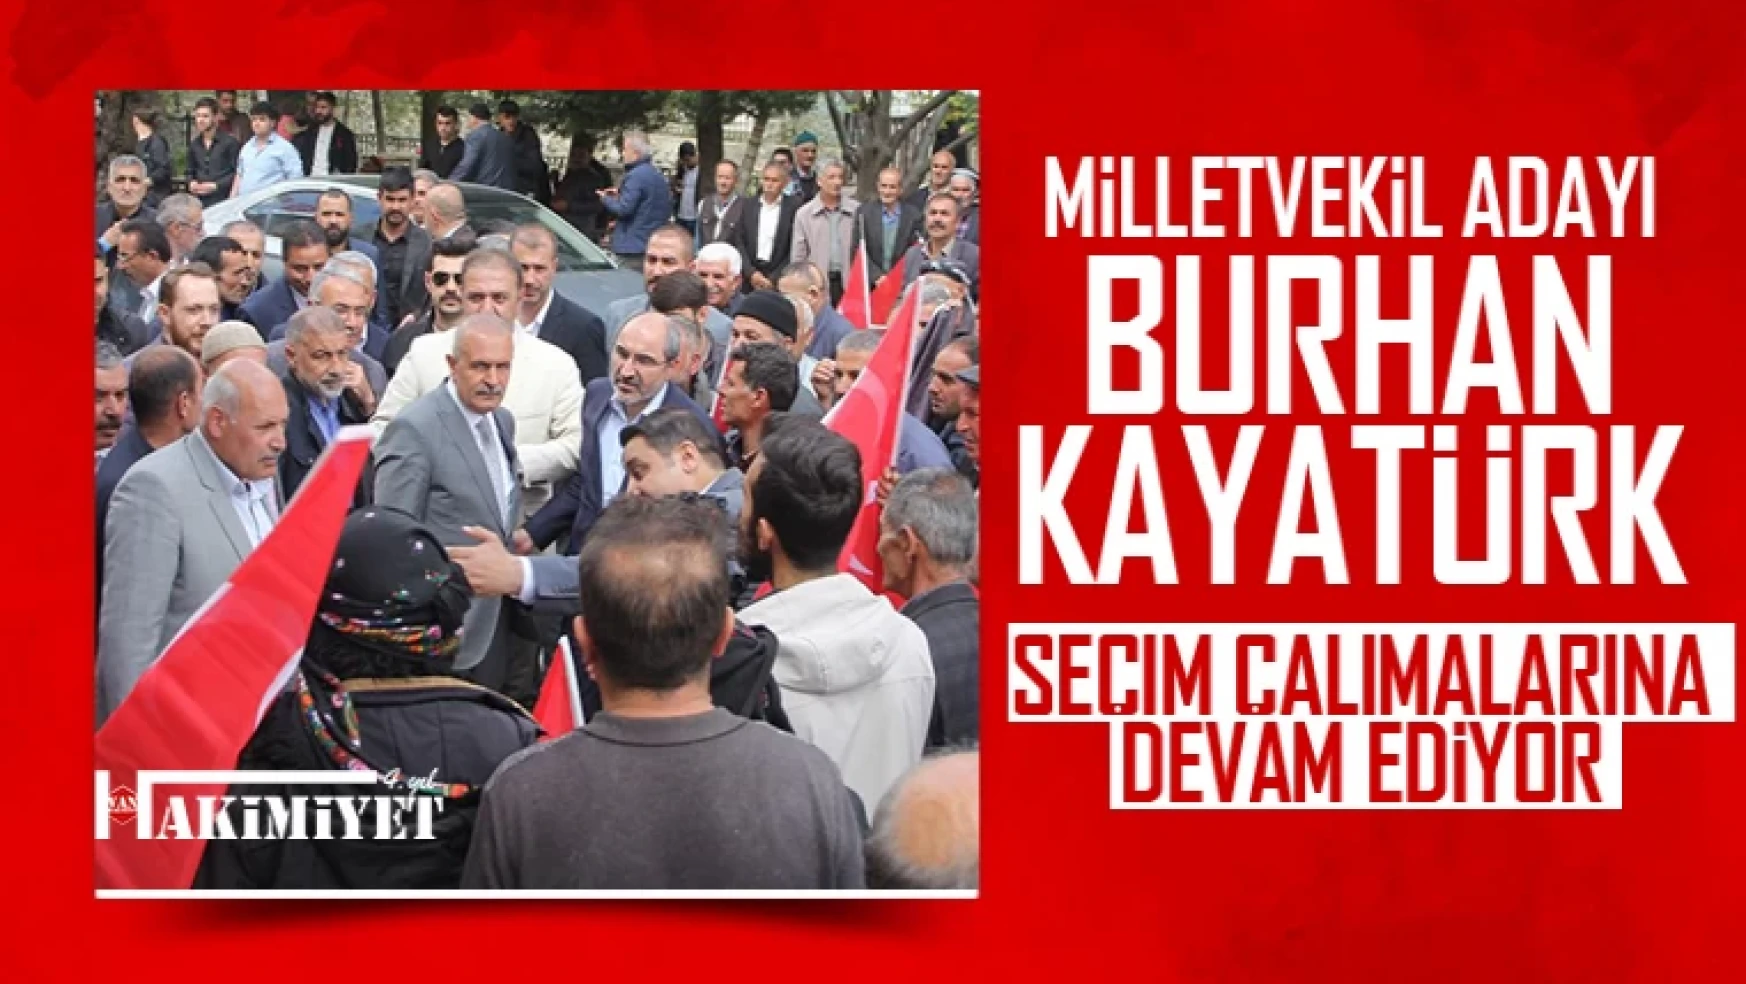 Milletvekili adayı Kayatürk'ün seçim çalışmaları hız kesmeden devam ediyor